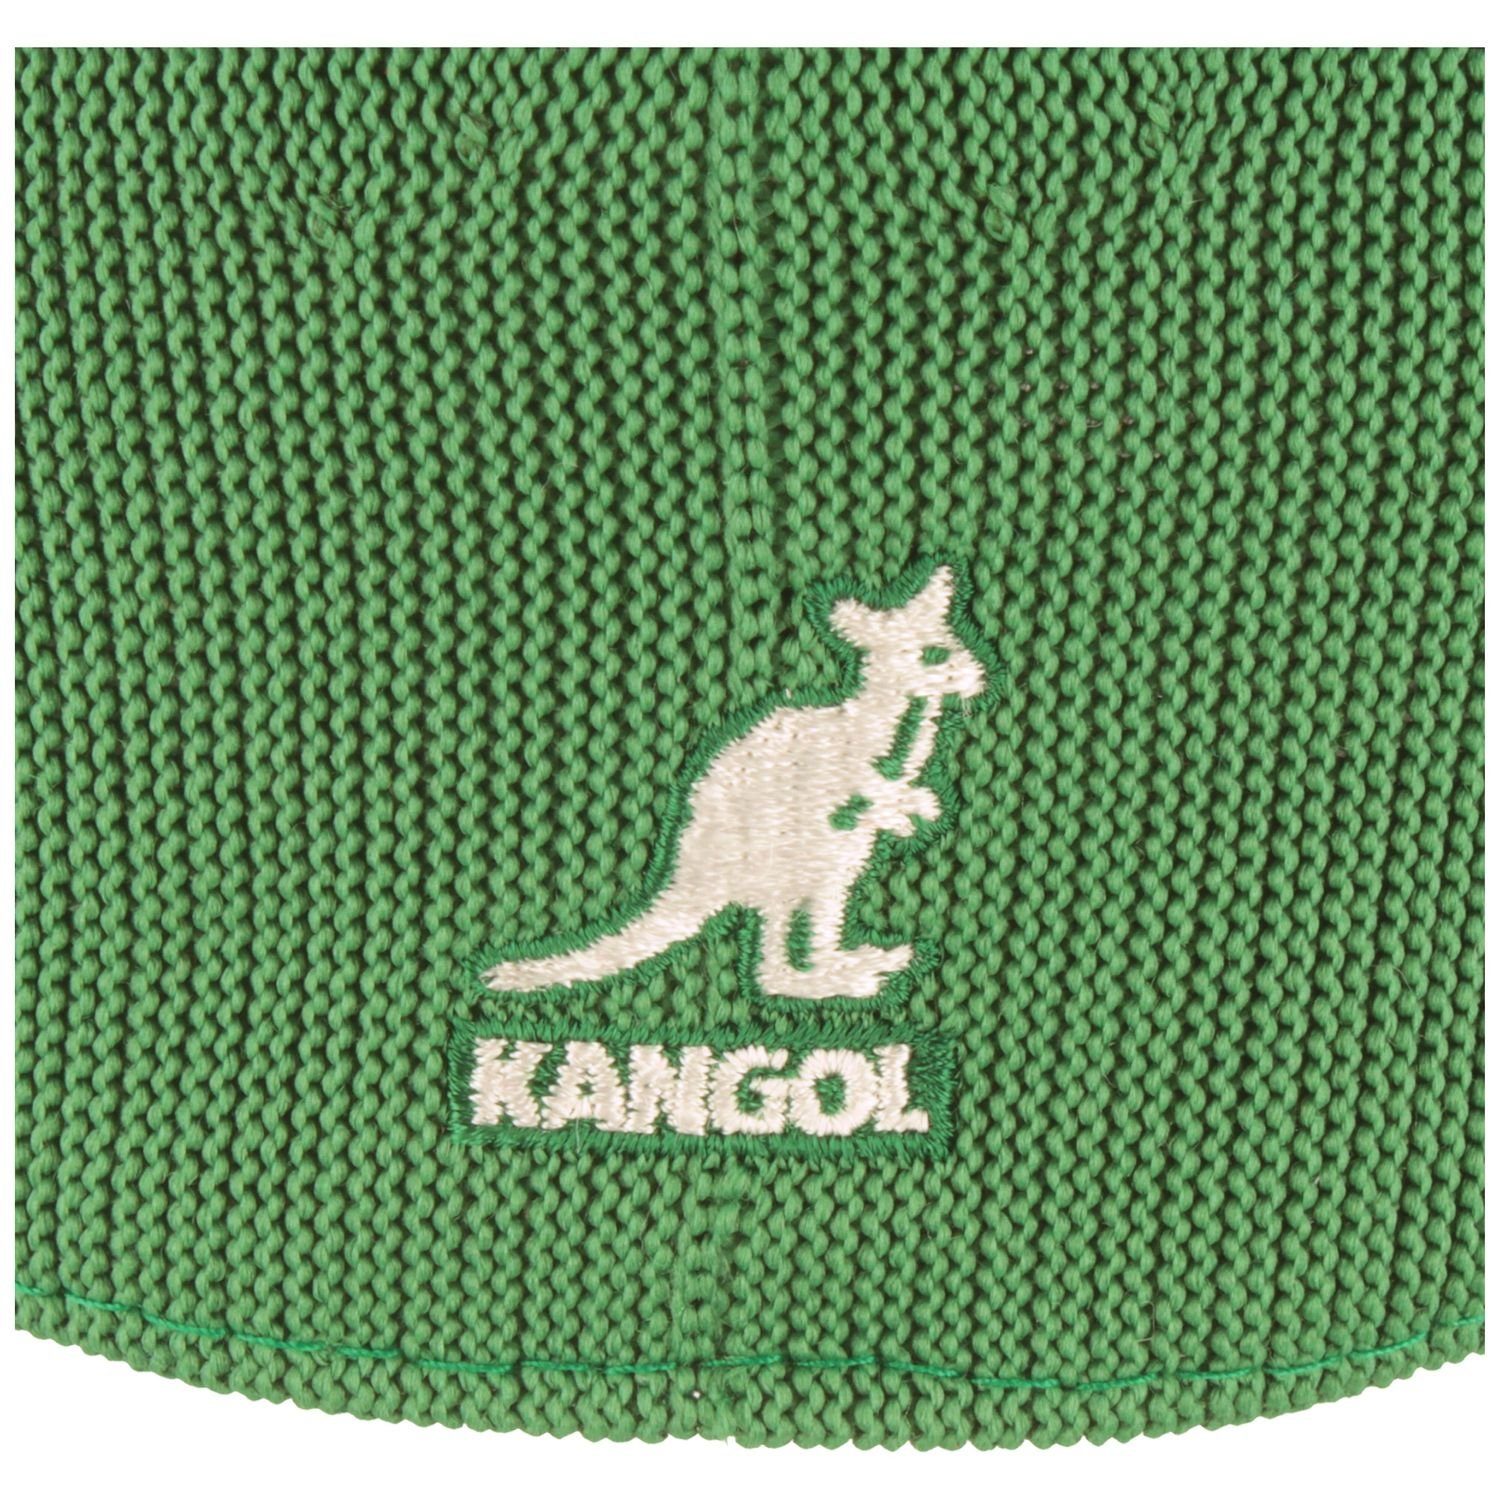 Kangol Schiebermütze Tropic Green Cap 504 Ventair TG302-Turf